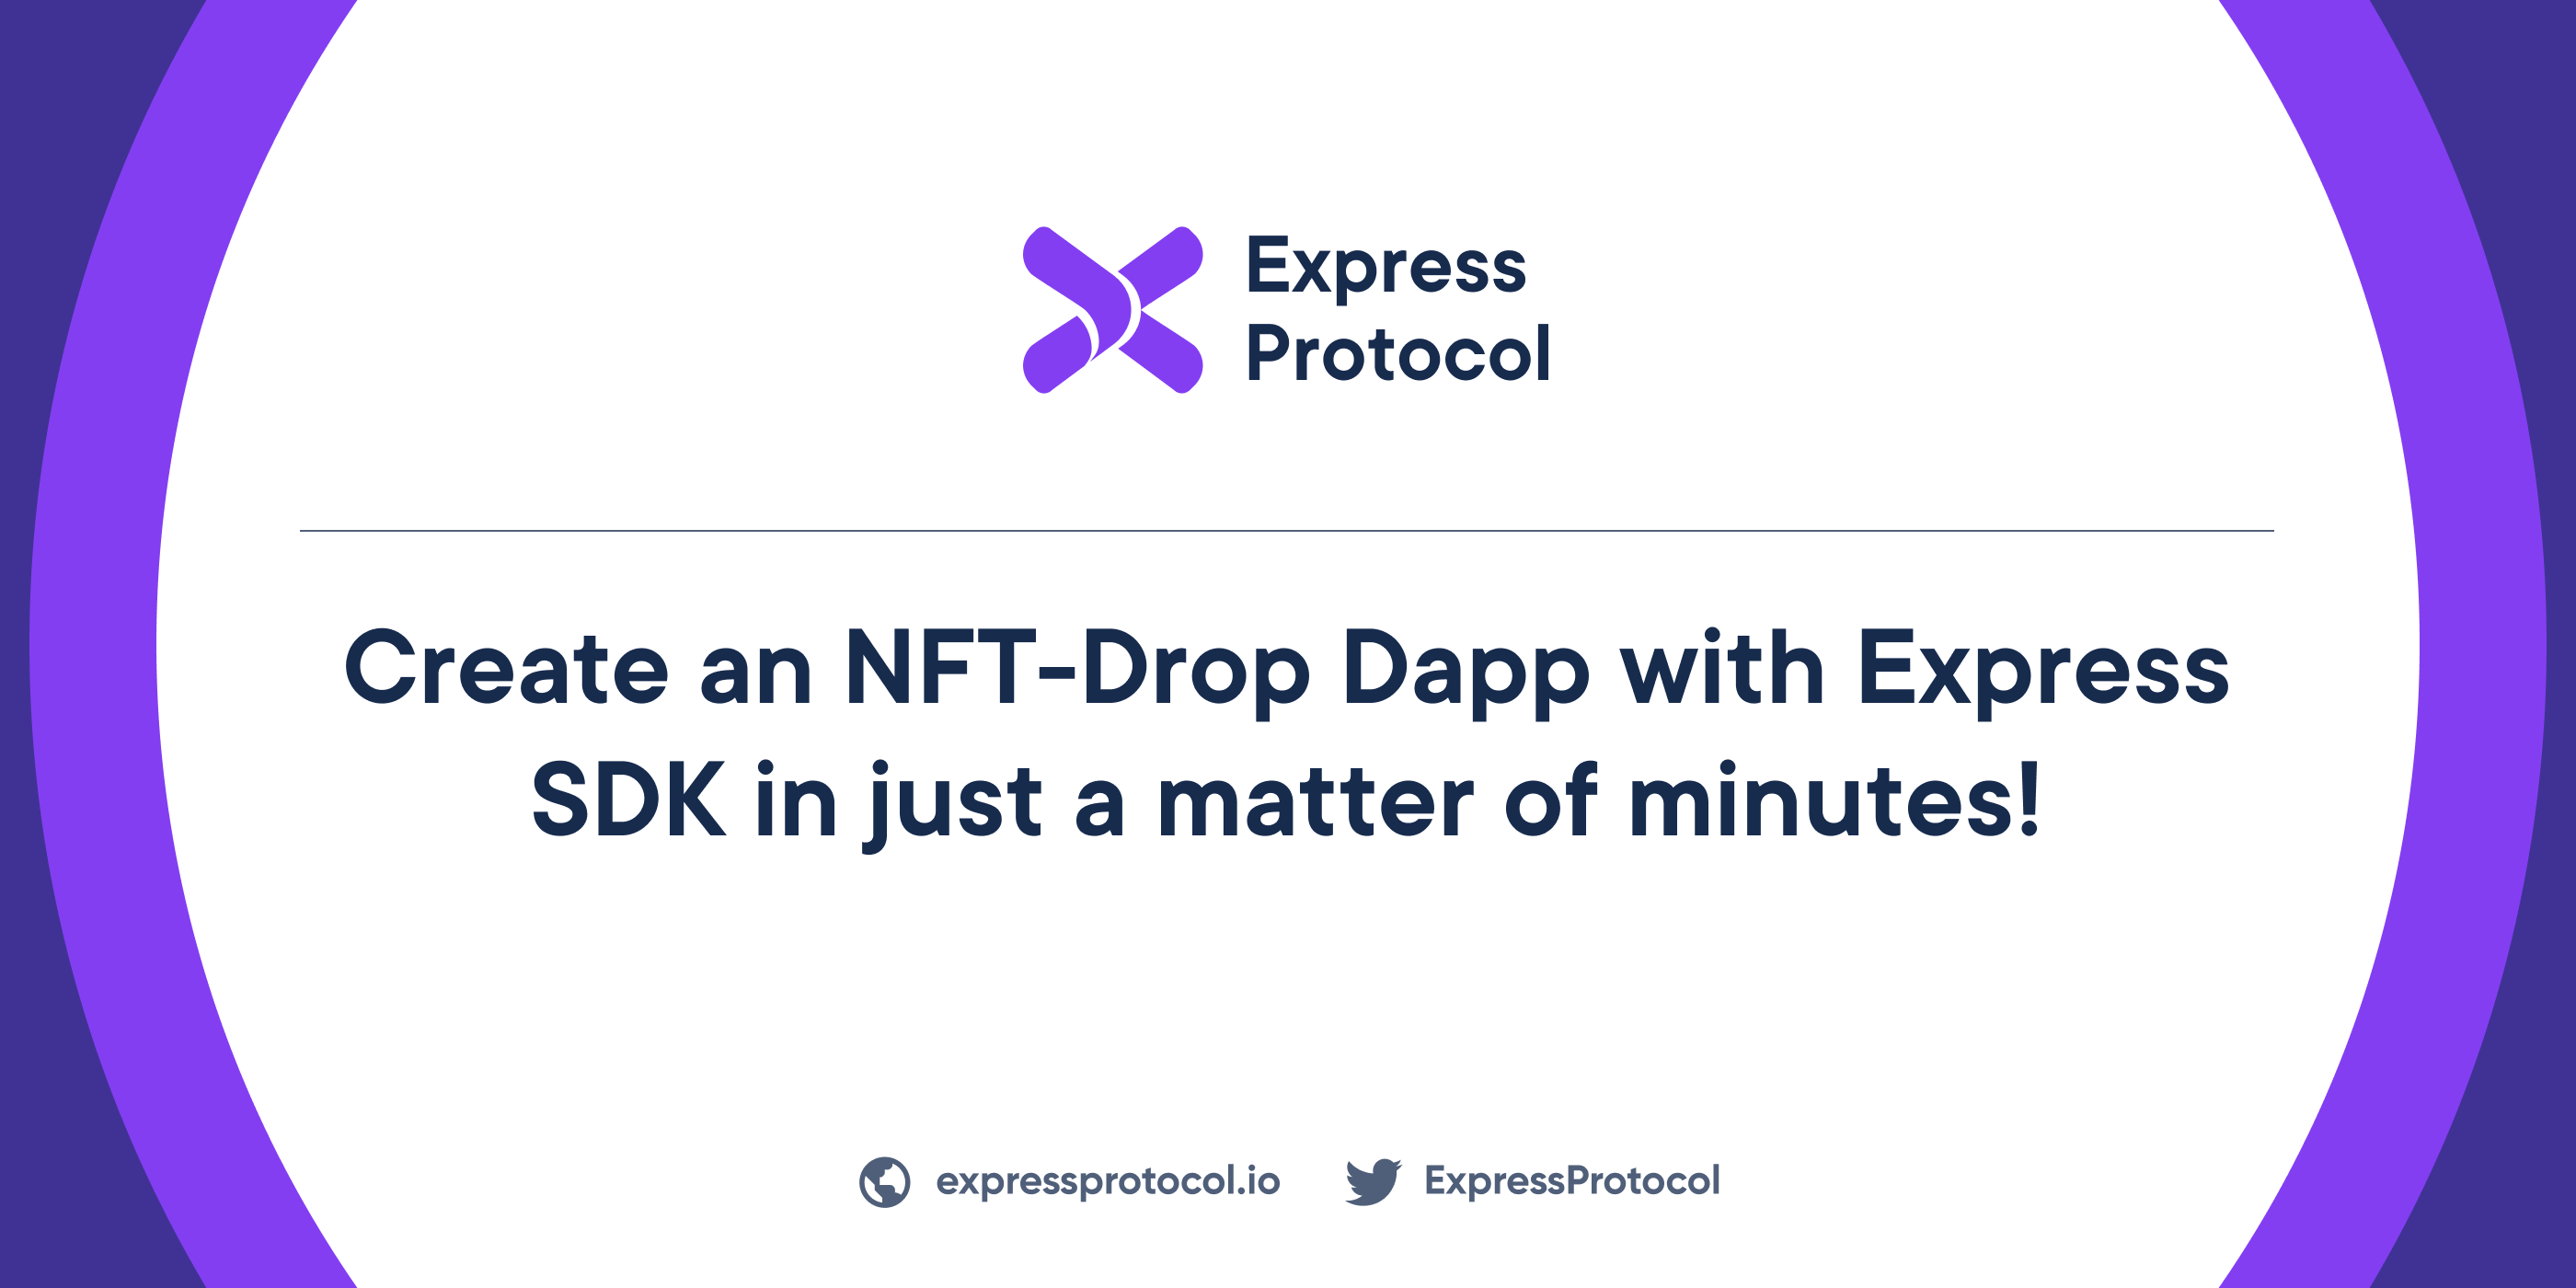 Create an NFT-Drop Dapp with Express SDK in